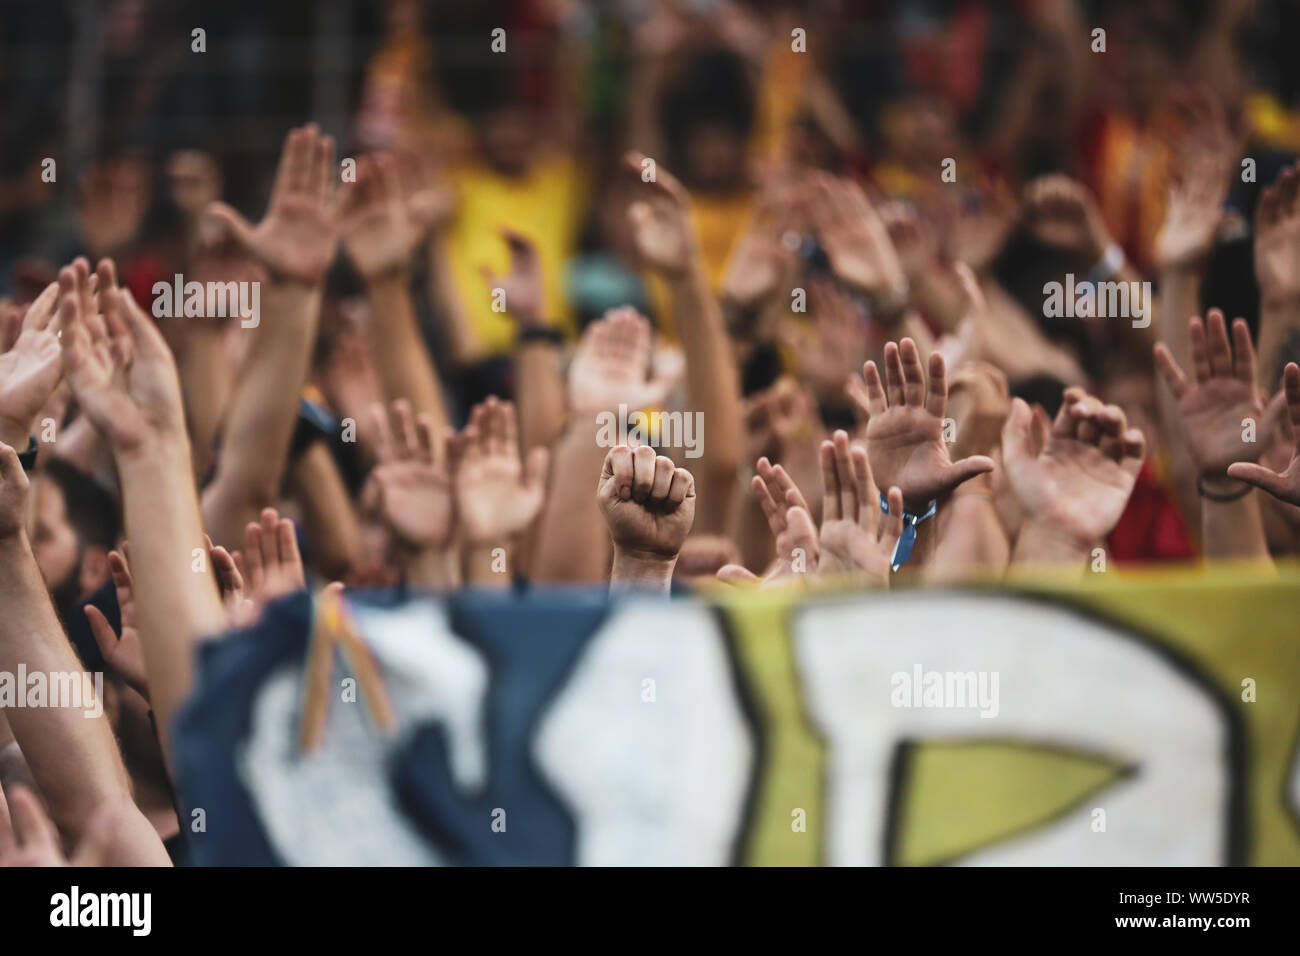 Plus de détails avec le poing et les mains des fans de football lors d'un jeu Banque D'Images